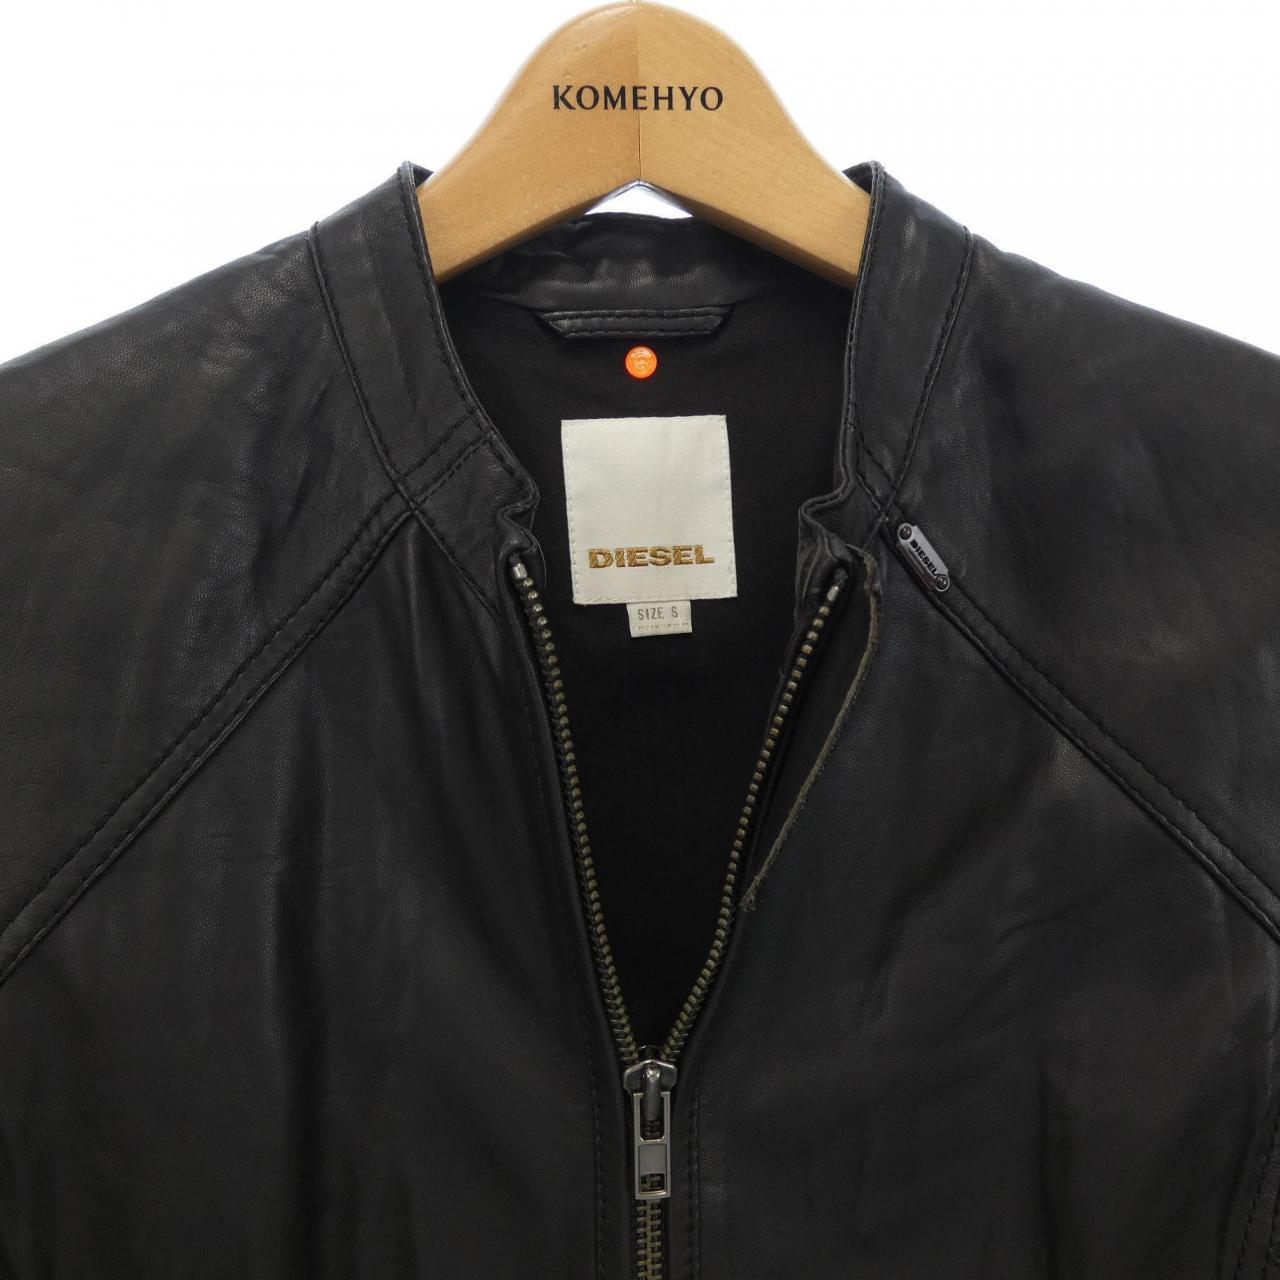 Diesel DIESEL leather jacket